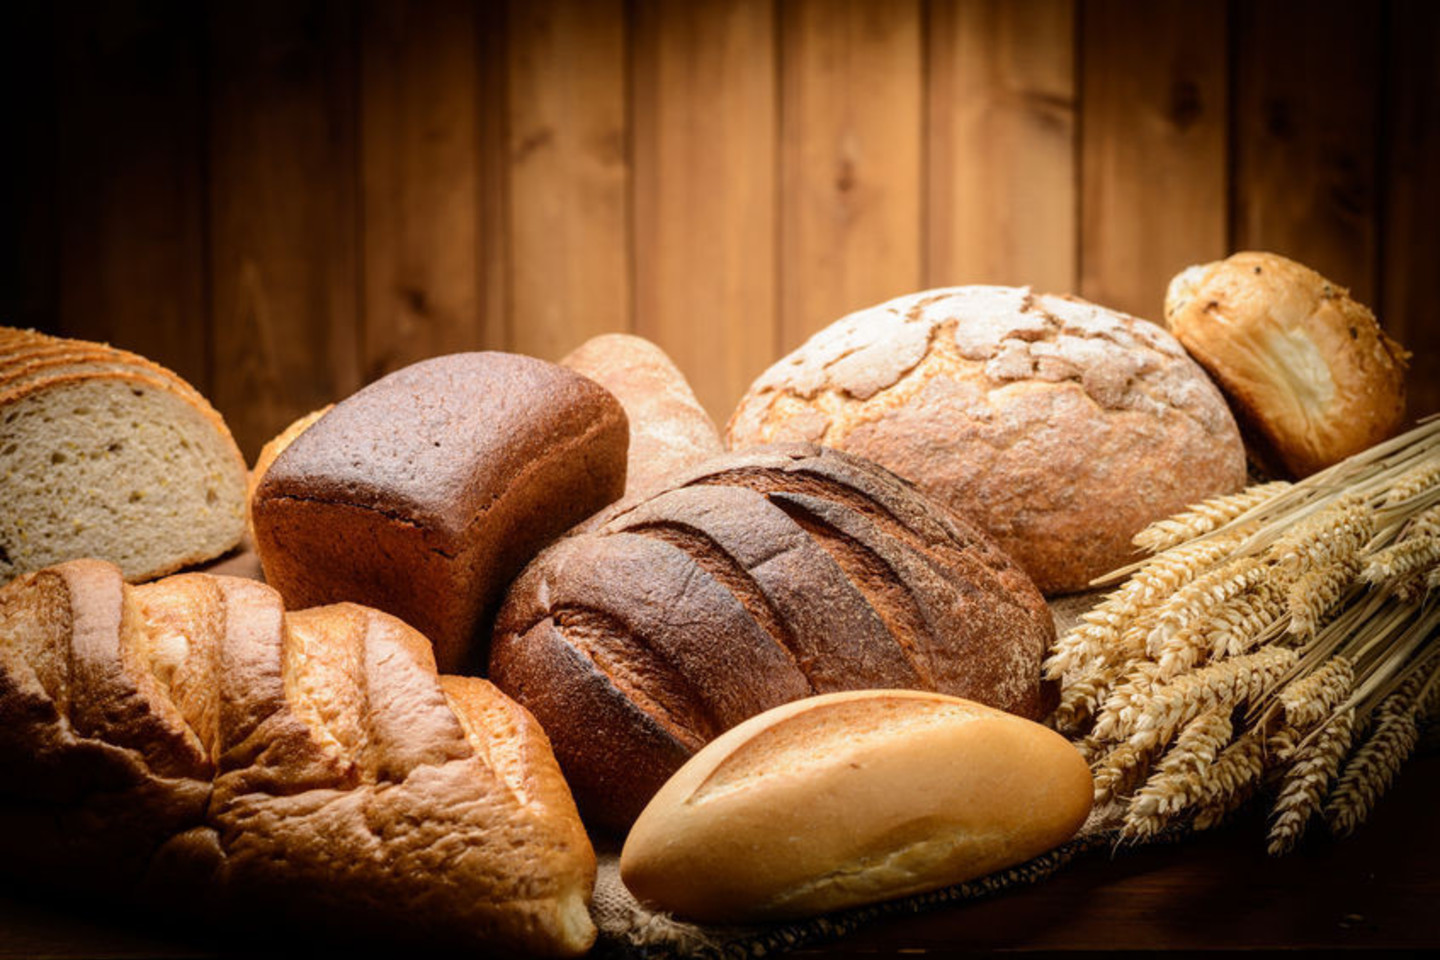 Net ir duona yra fermentuotas produktas.<br>123rf nuotr.